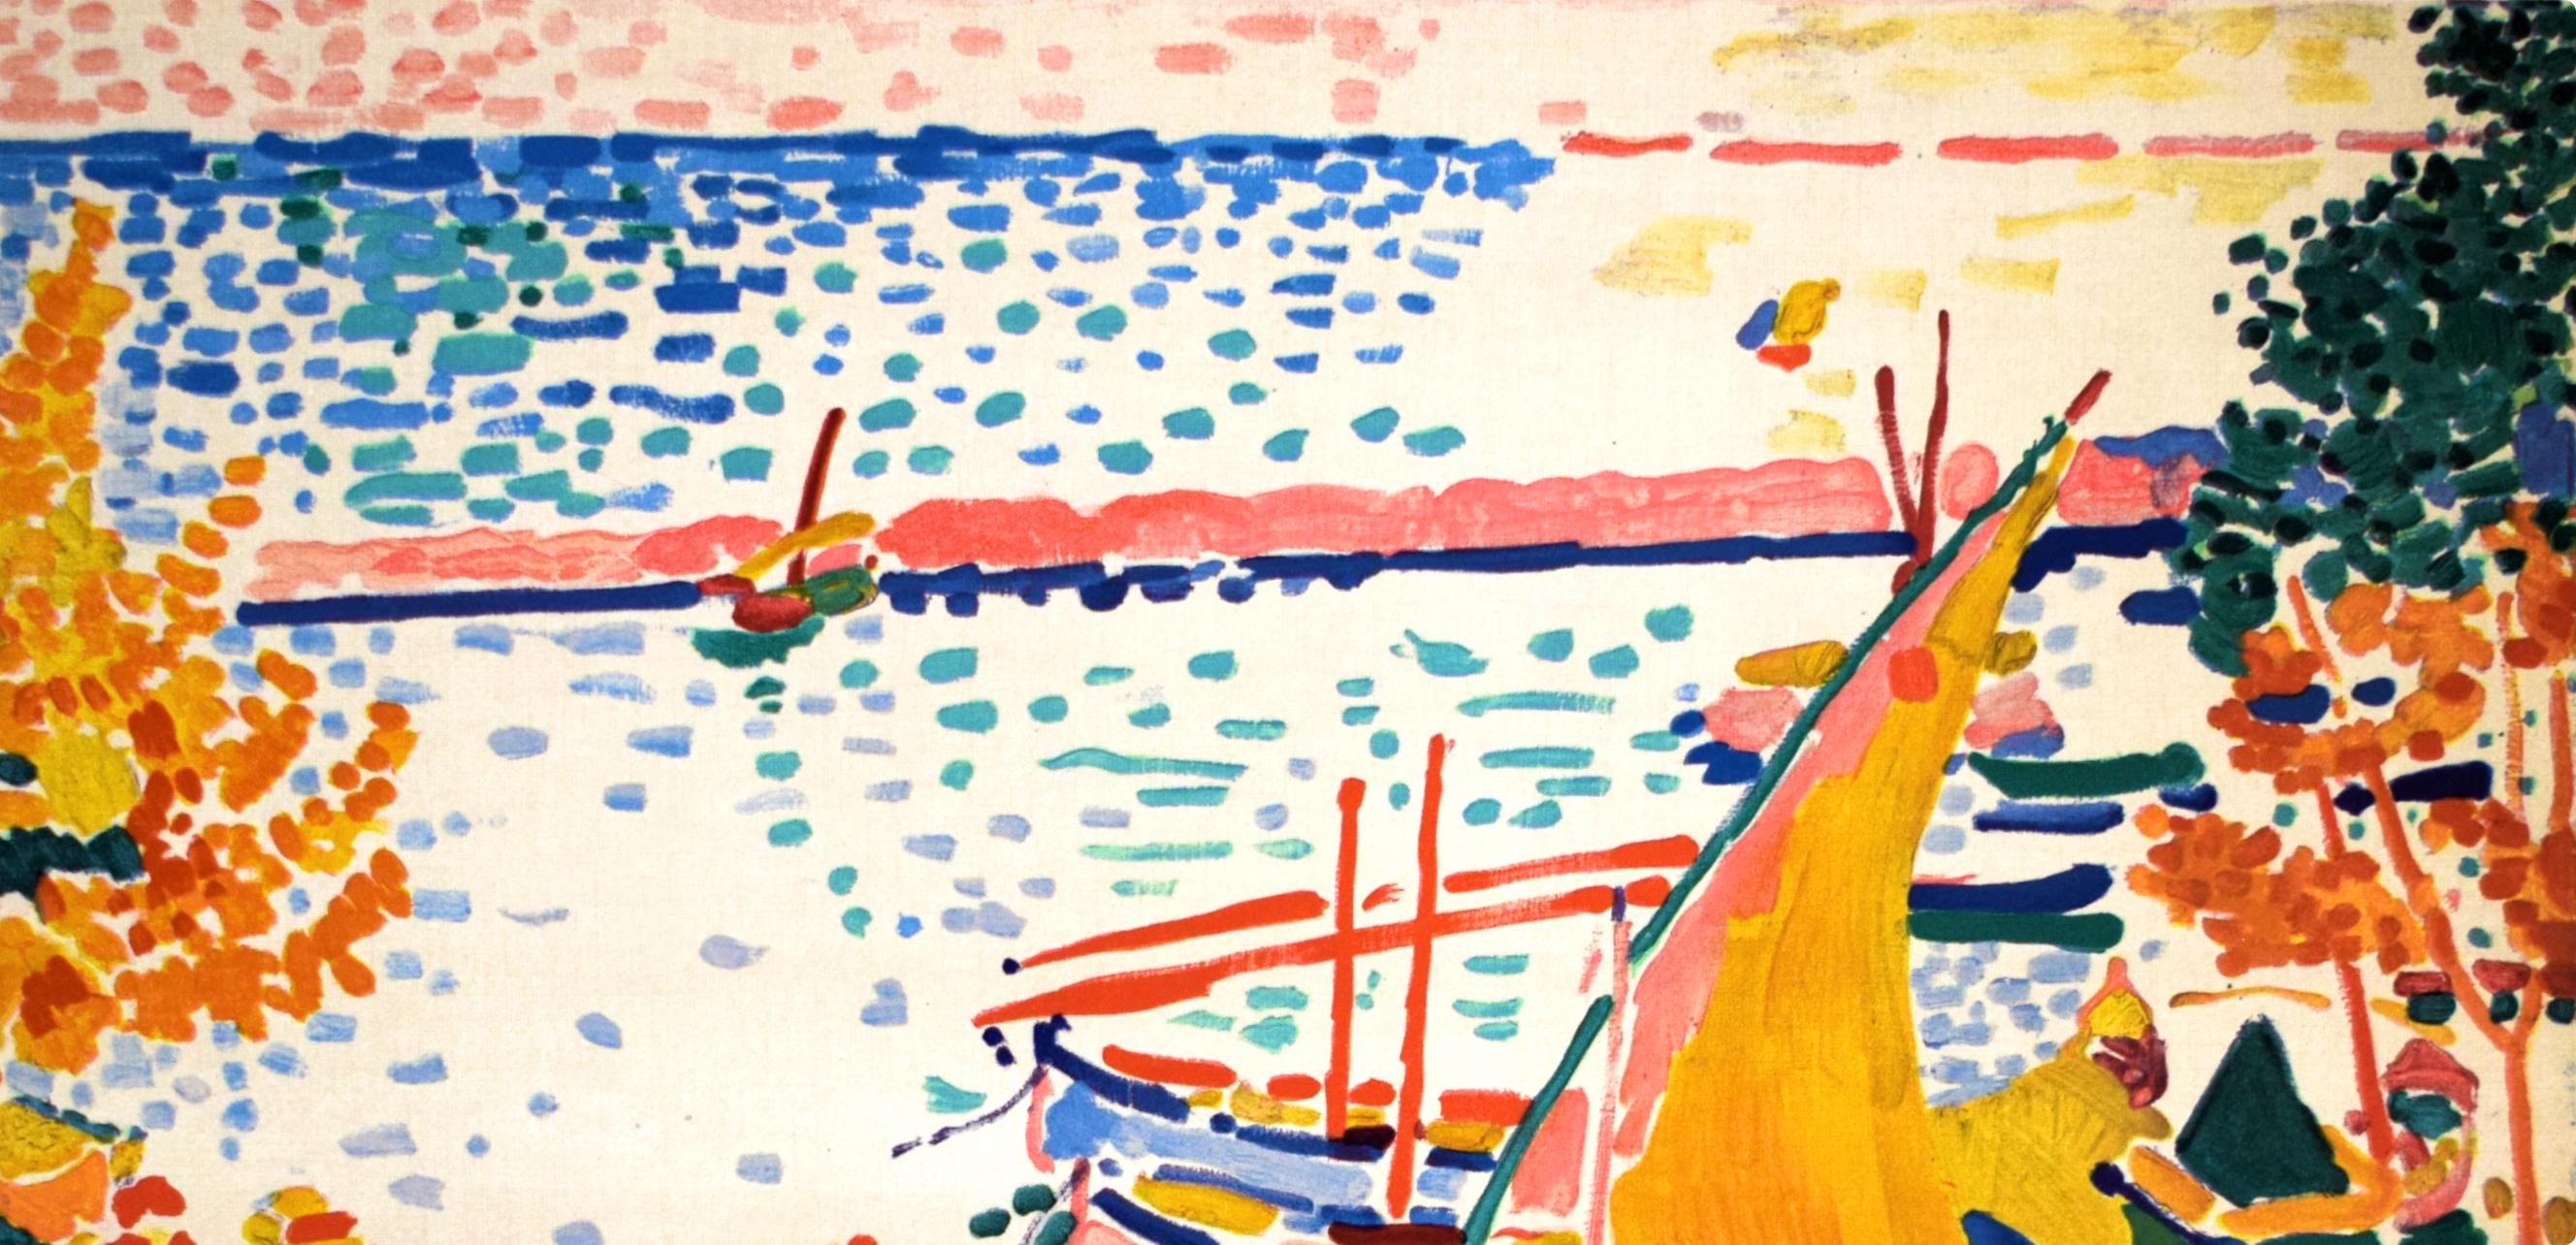 Derain, Port de Collioure, Fauves, Collection Pierre Lévy (after) - Print by André Derain